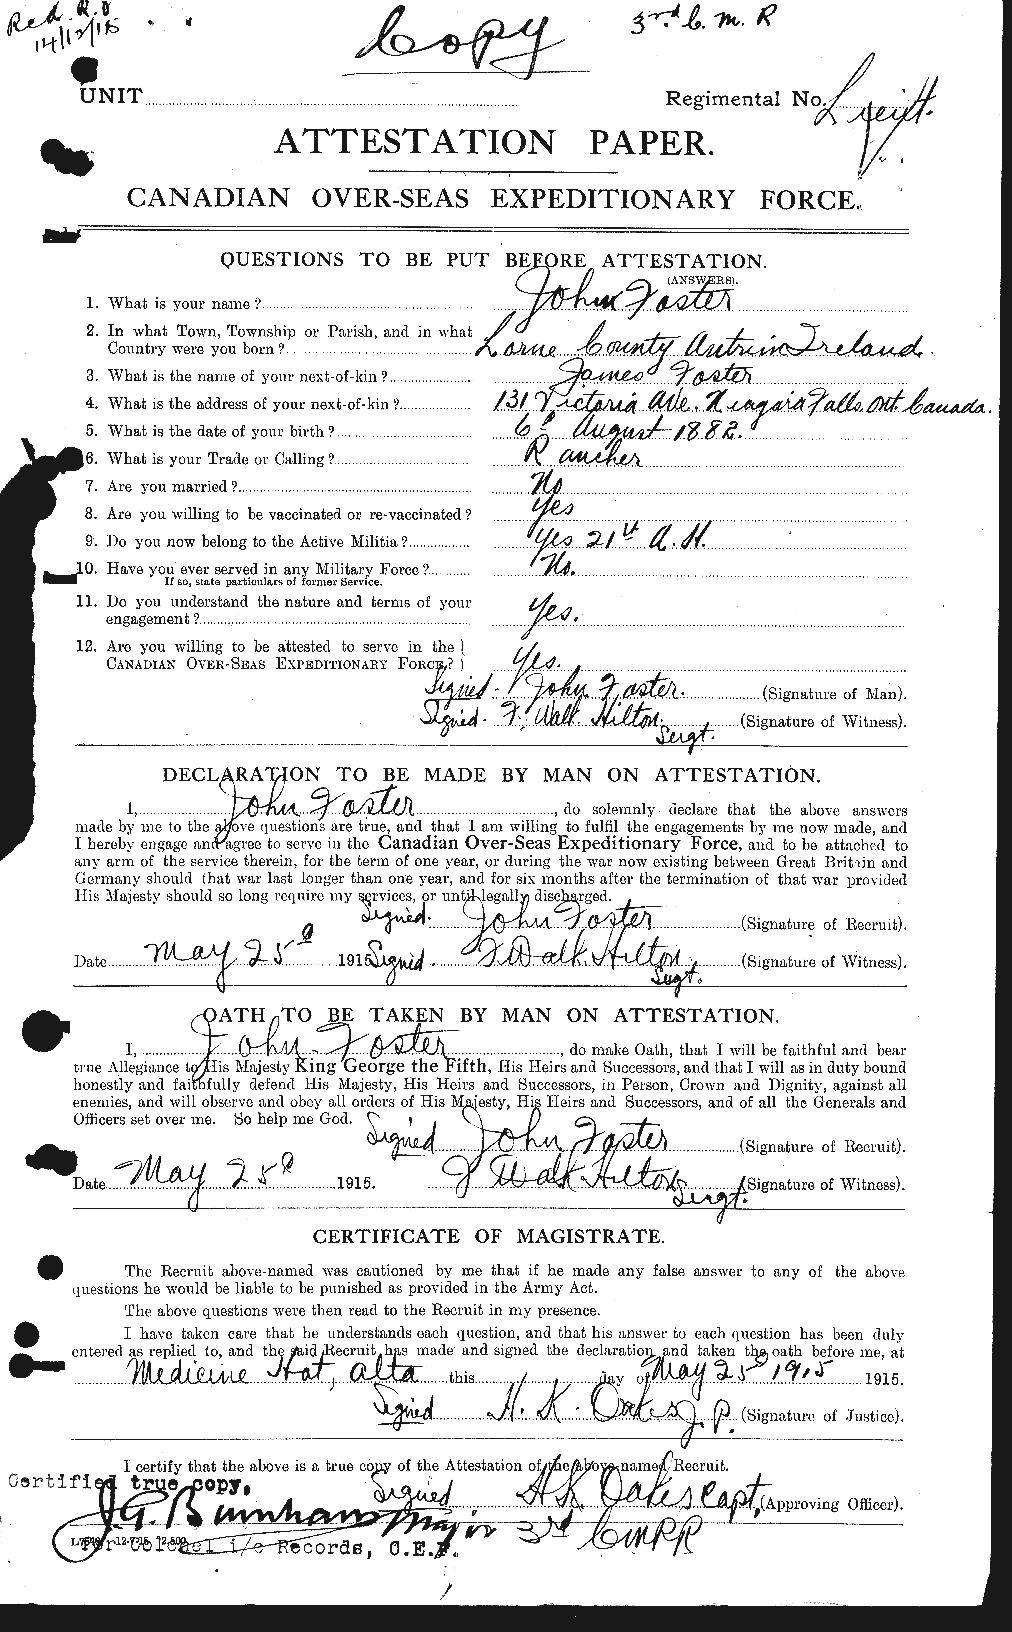 Dossiers du Personnel de la Première Guerre mondiale - CEC 333328a